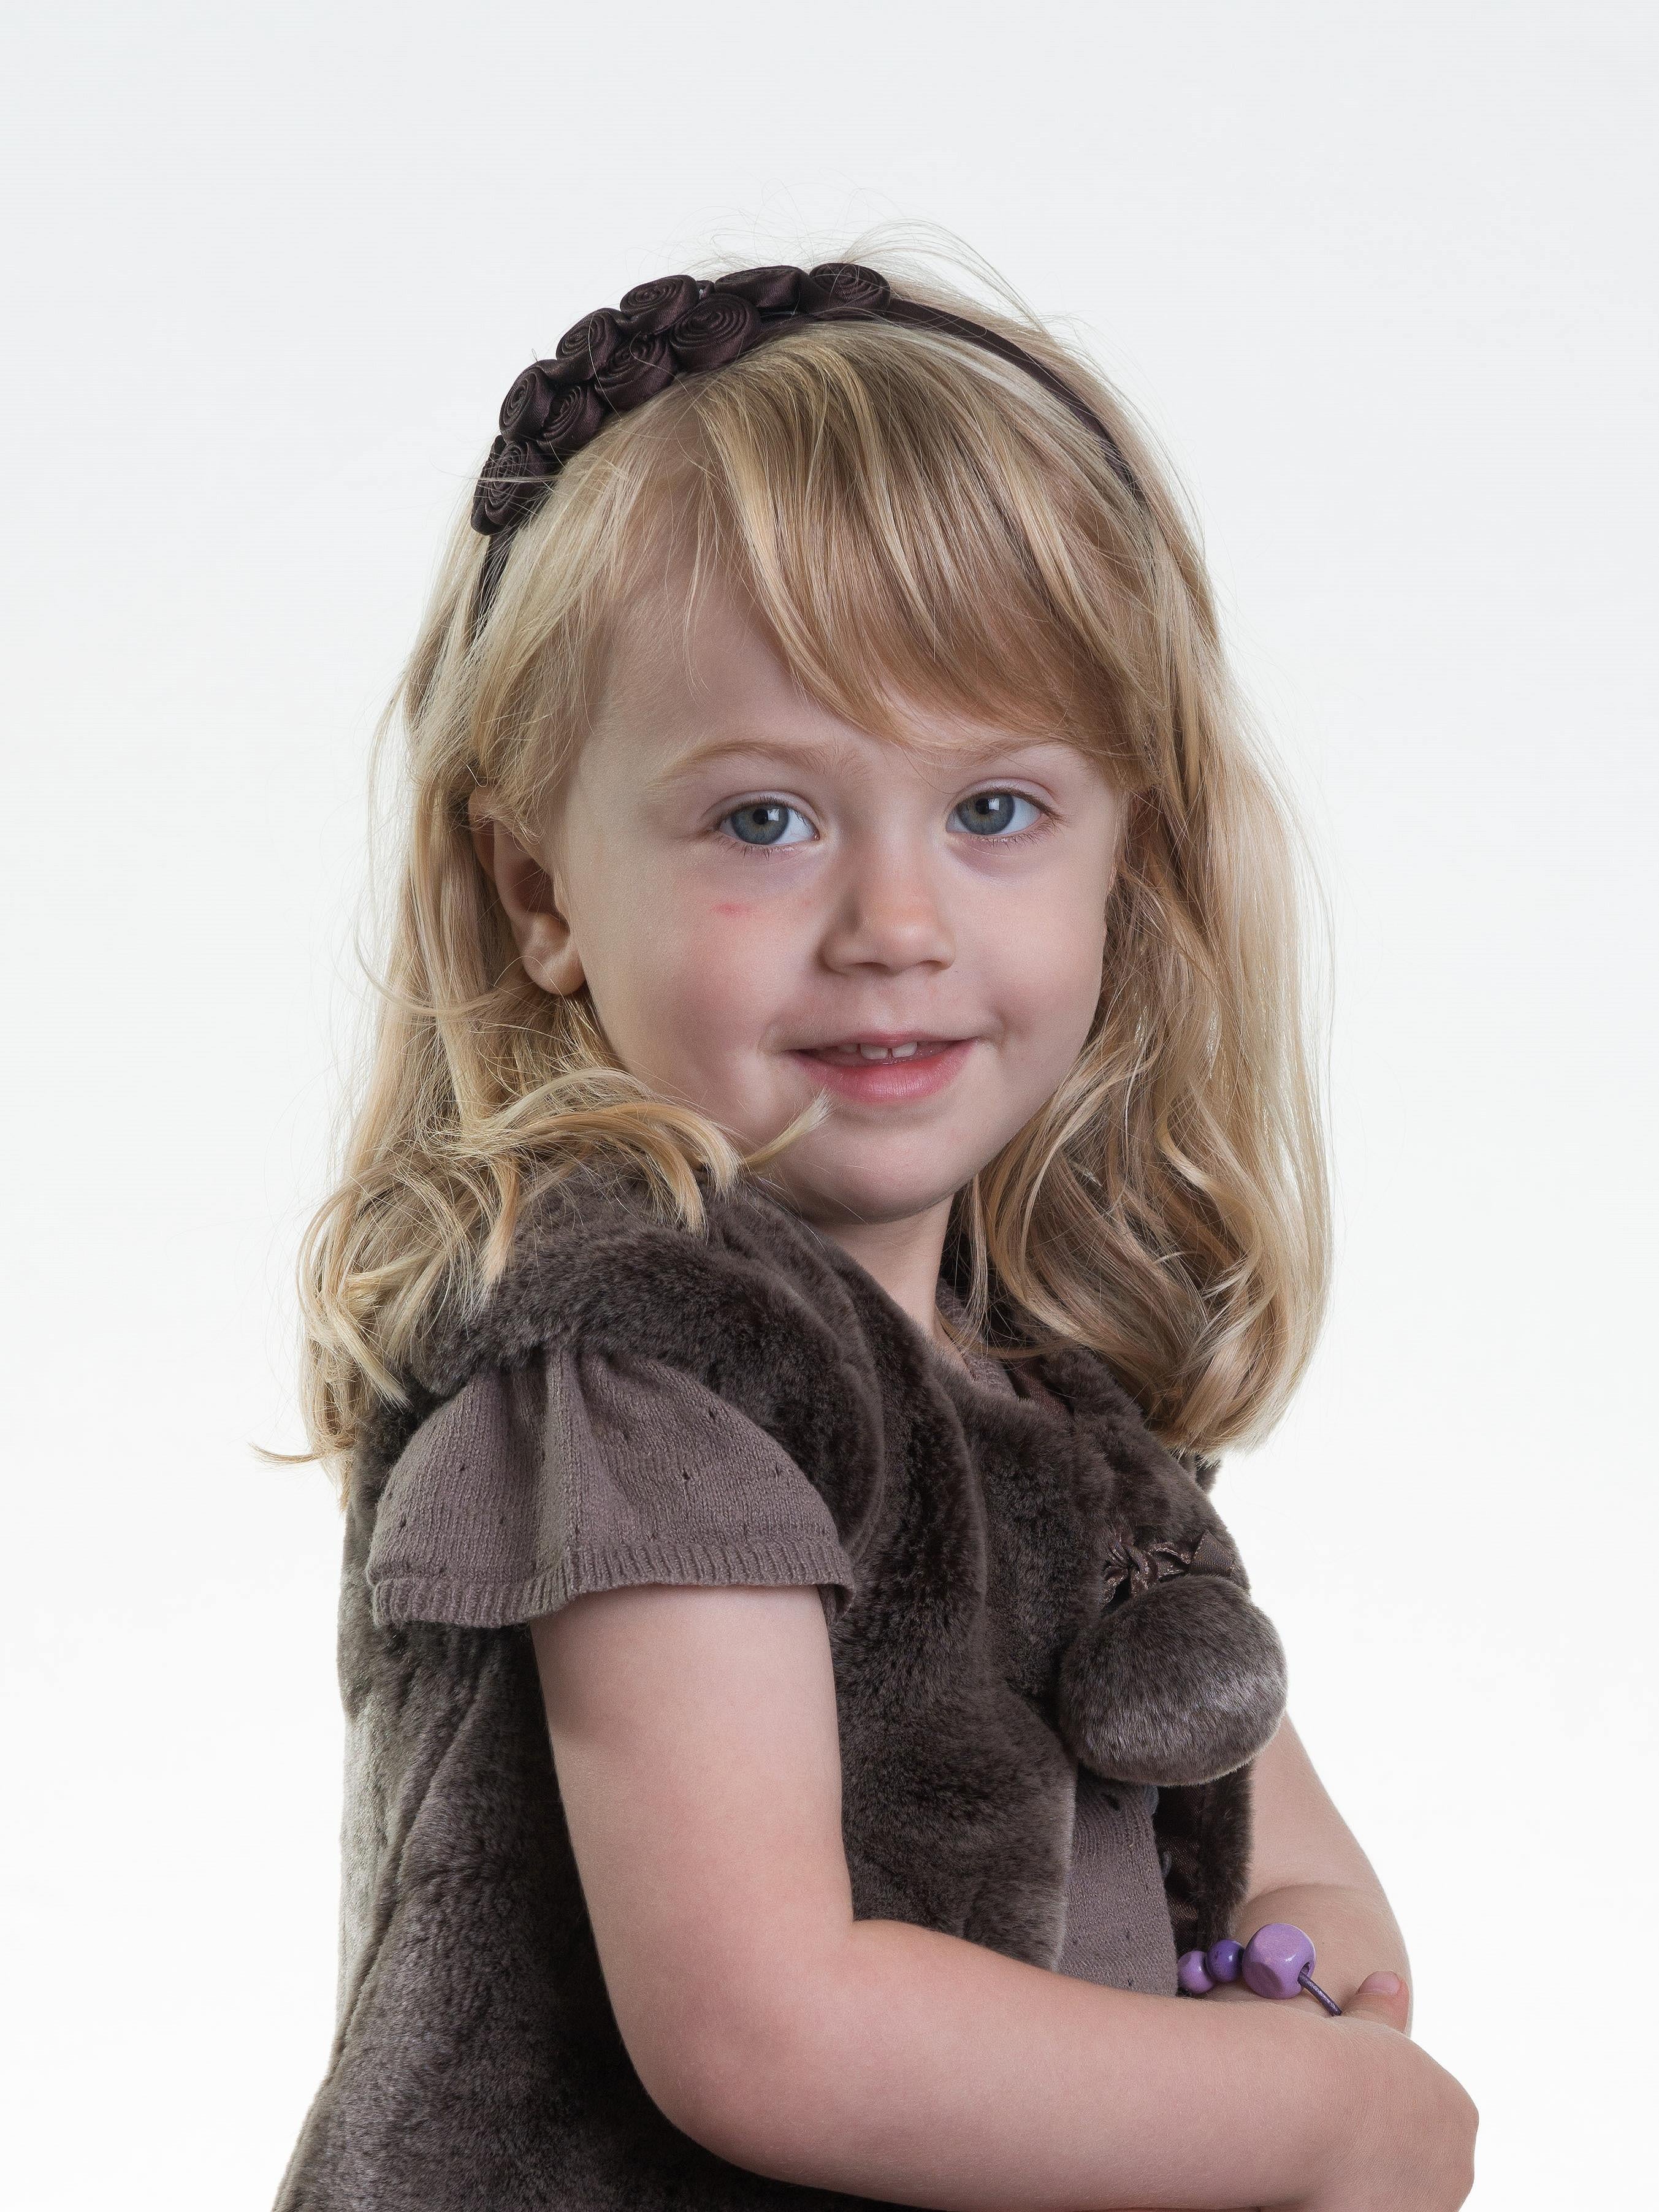 En smukt portræt af en lille pige med blond hår